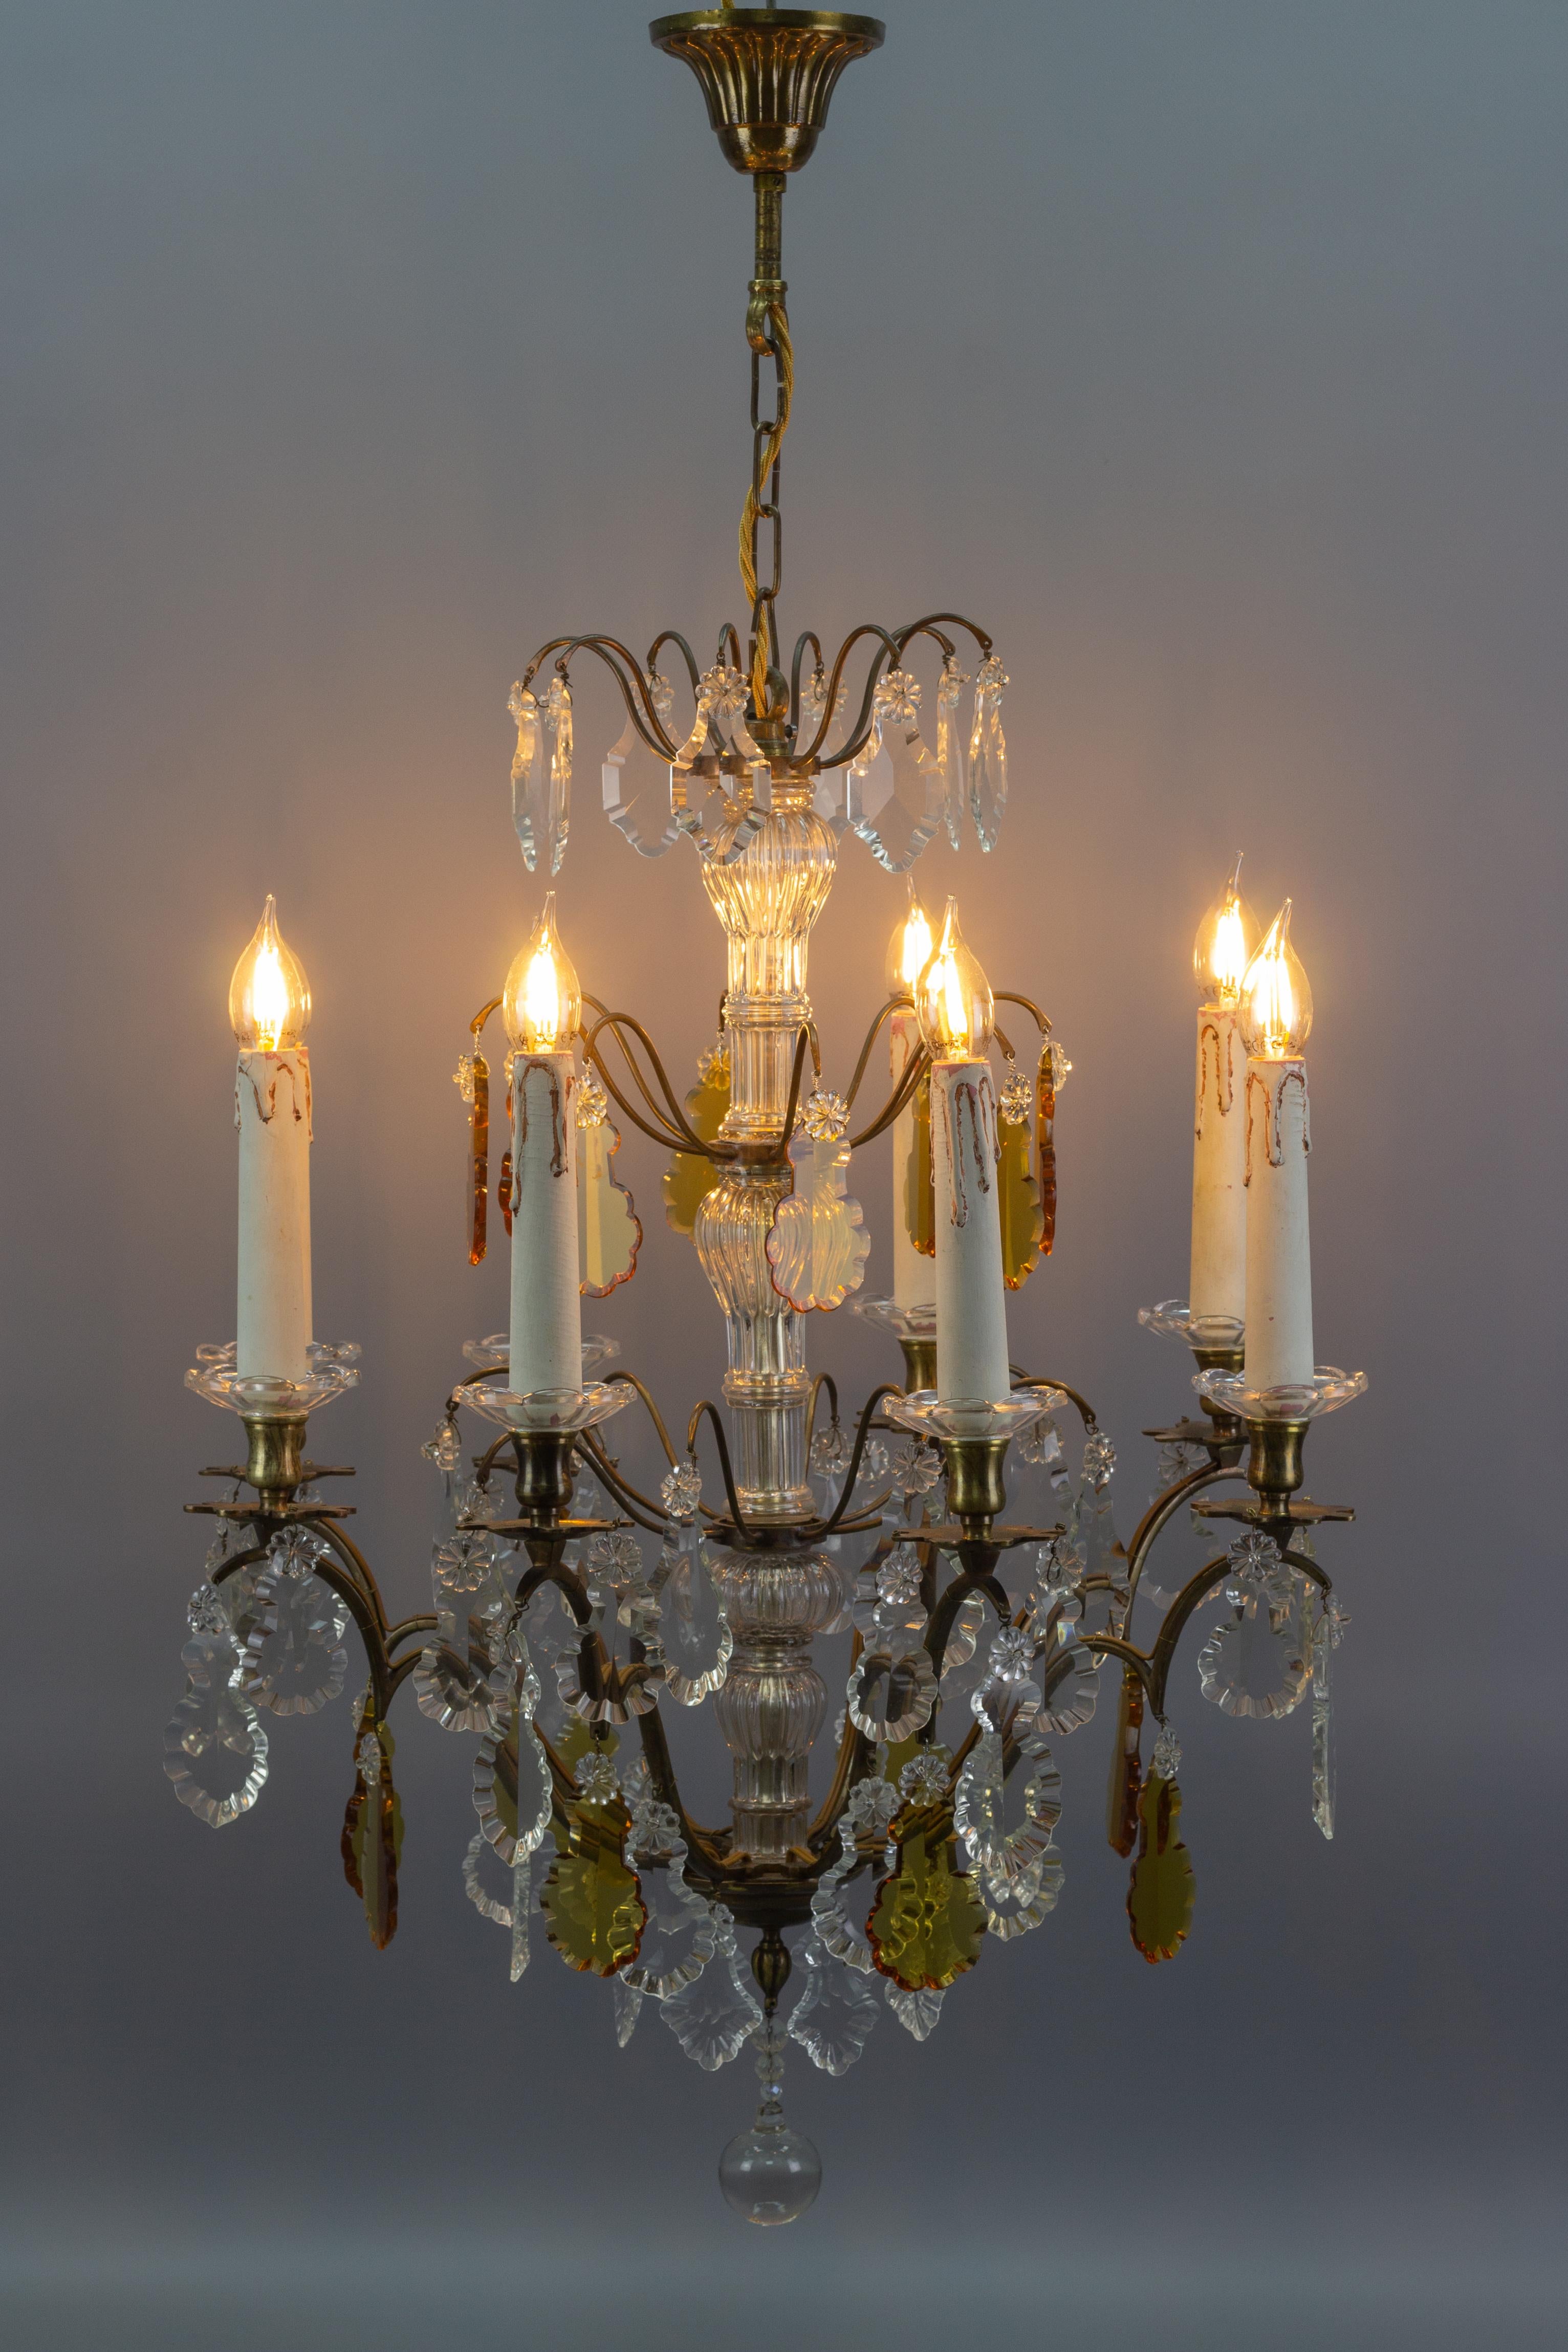 Ein atemberaubender Kronleuchter im Louis-XVI-Stil aus Kristallglas und Messing, hergestellt in Frankreich um 1900. Ursprünglich für 8 Kerzen gedacht, wurde dieser antike Kronleuchter elektrifiziert. Acht Messingarme mit blumenförmigen Messing- und